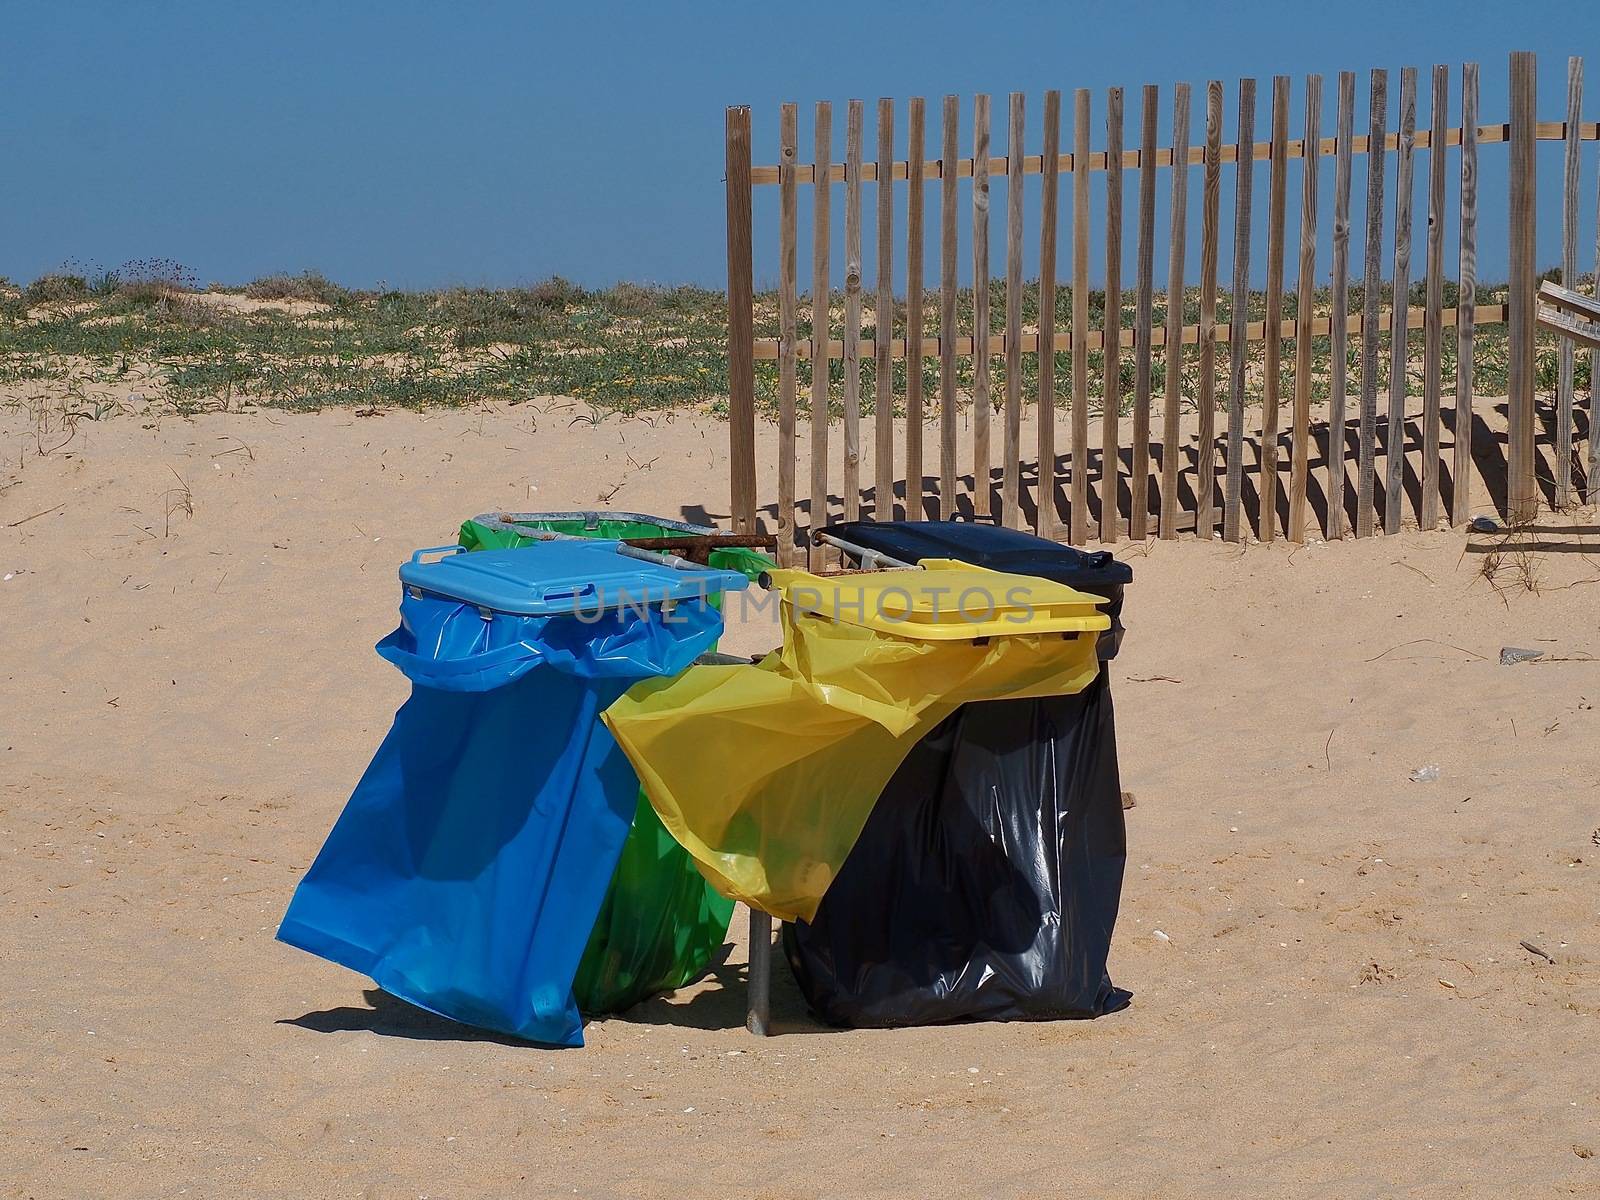 Waste separation in Portugal at a beach by Stimmungsbilder